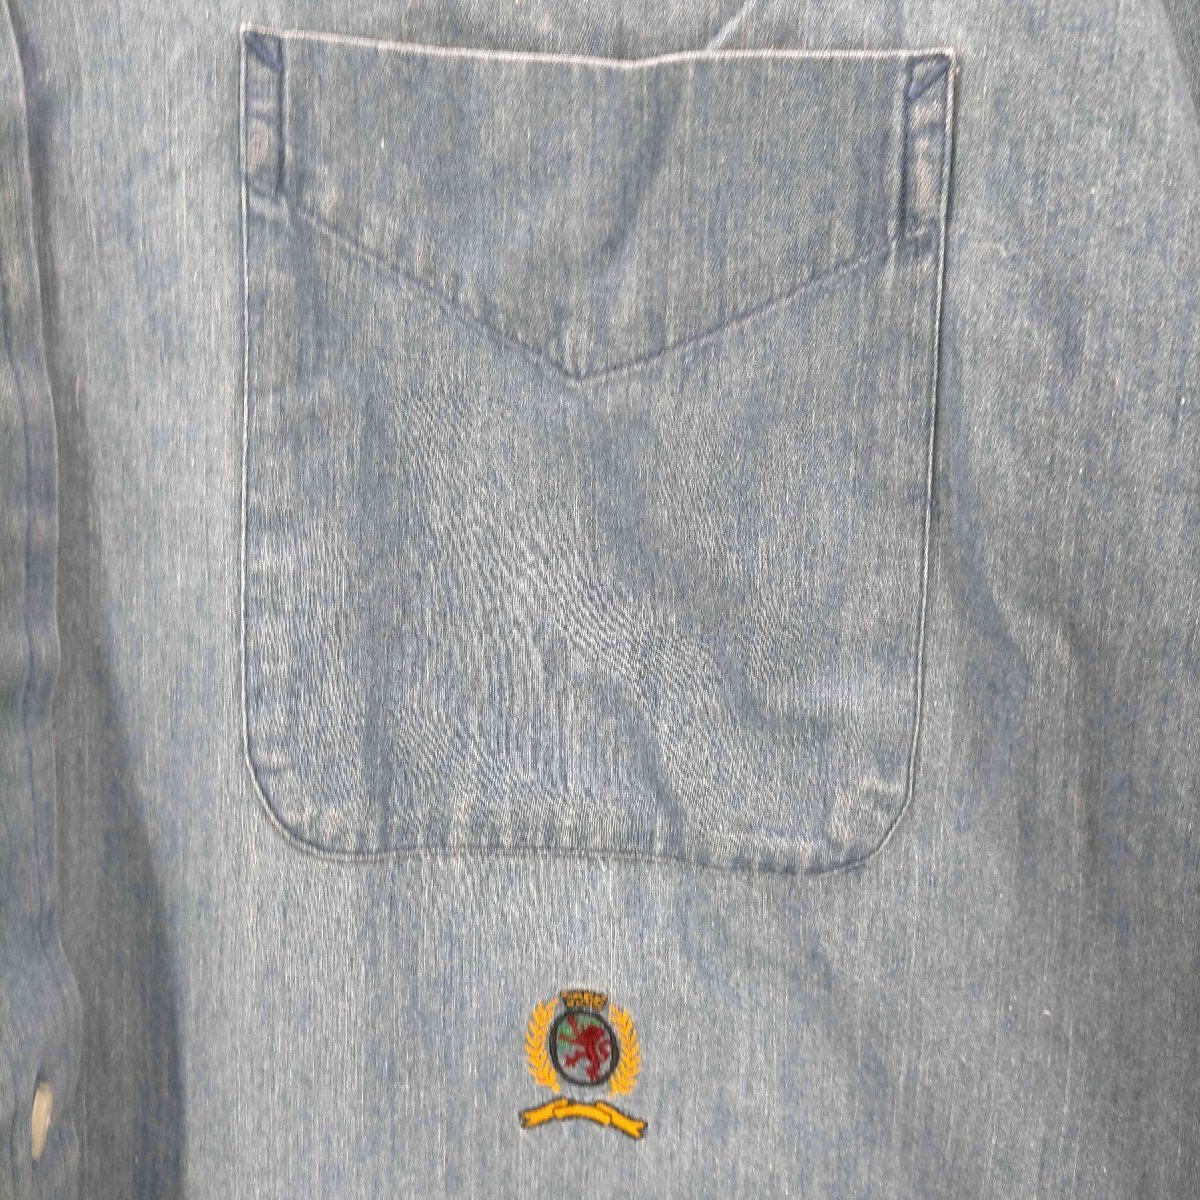 TOMMY HILFIGER(トミーヒルフィガー) 香港製 ボタンダウン シャンブレーシャツ メンズ im 中古 古着 0625_画像4